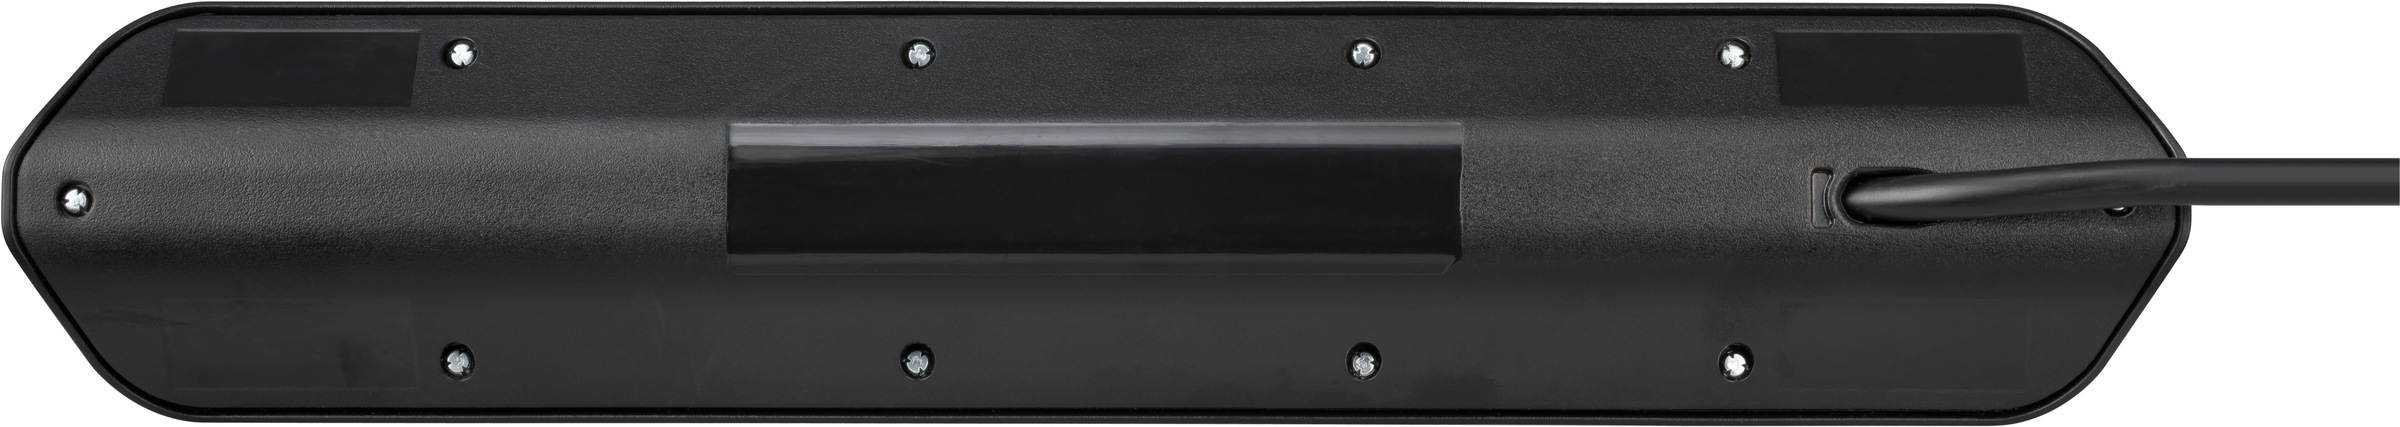 Brennenstuhl Steckdosenleiste »estilo«, 4x Schutzkontakt-Steckdosen, 2x Euro-Steckdosen, 2x USB